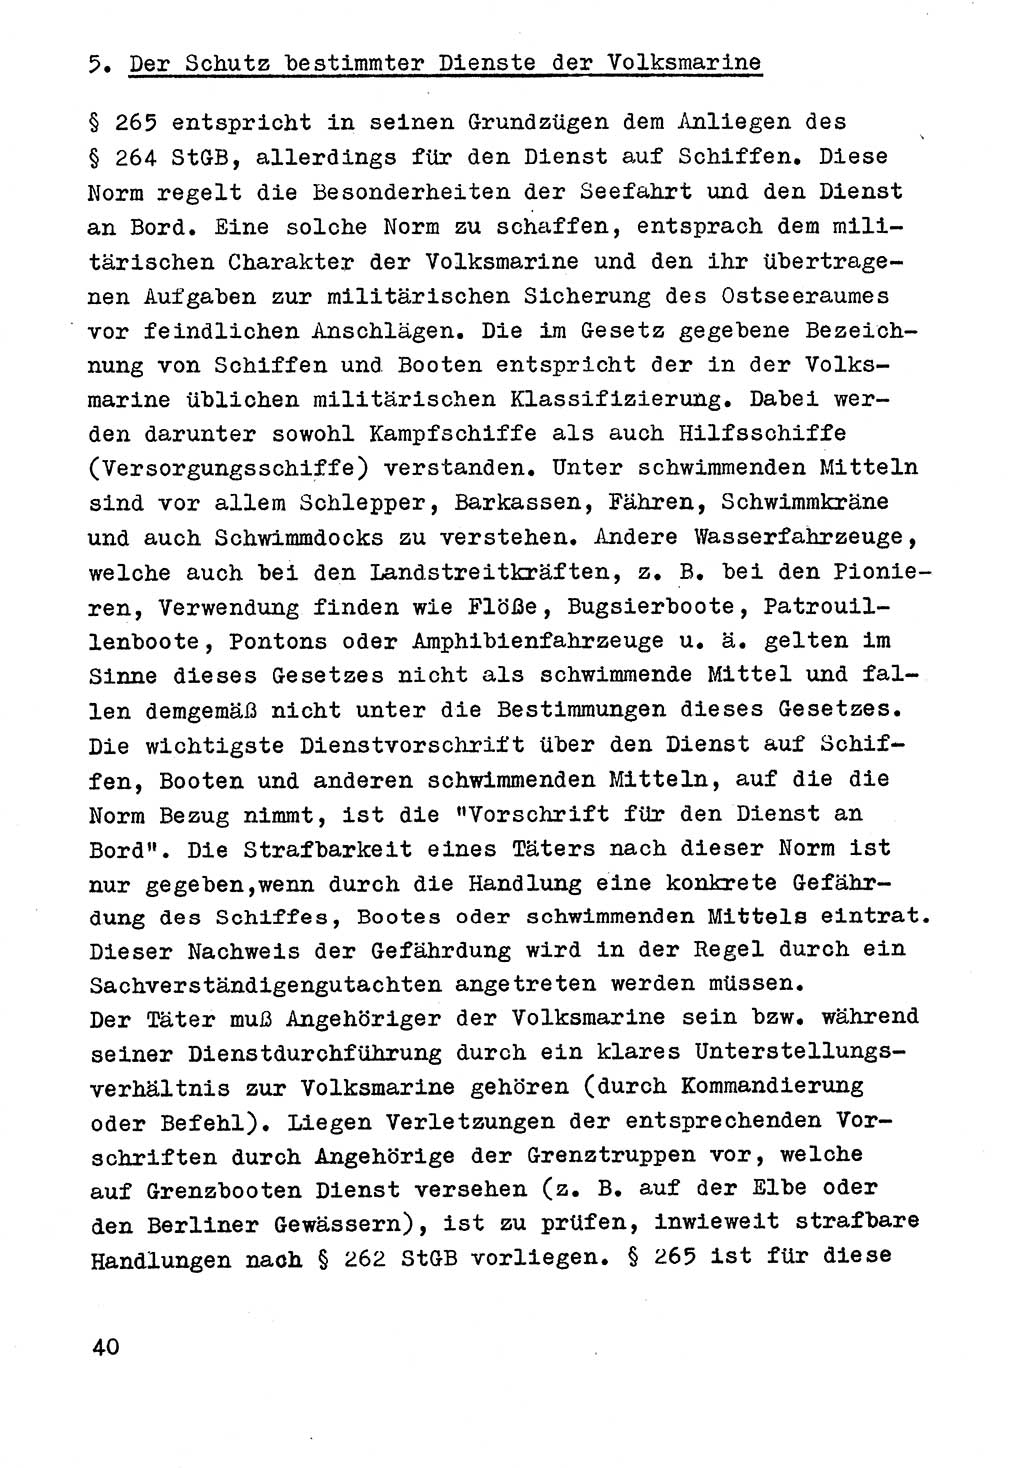 Strafrecht der DDR (Deutsche Demokratische Republik), Besonderer Teil, Lehrmaterial, Heft 9 1969, Seite 40 (Strafr. DDR BT Lehrmat. H. 9 1969, S. 40)